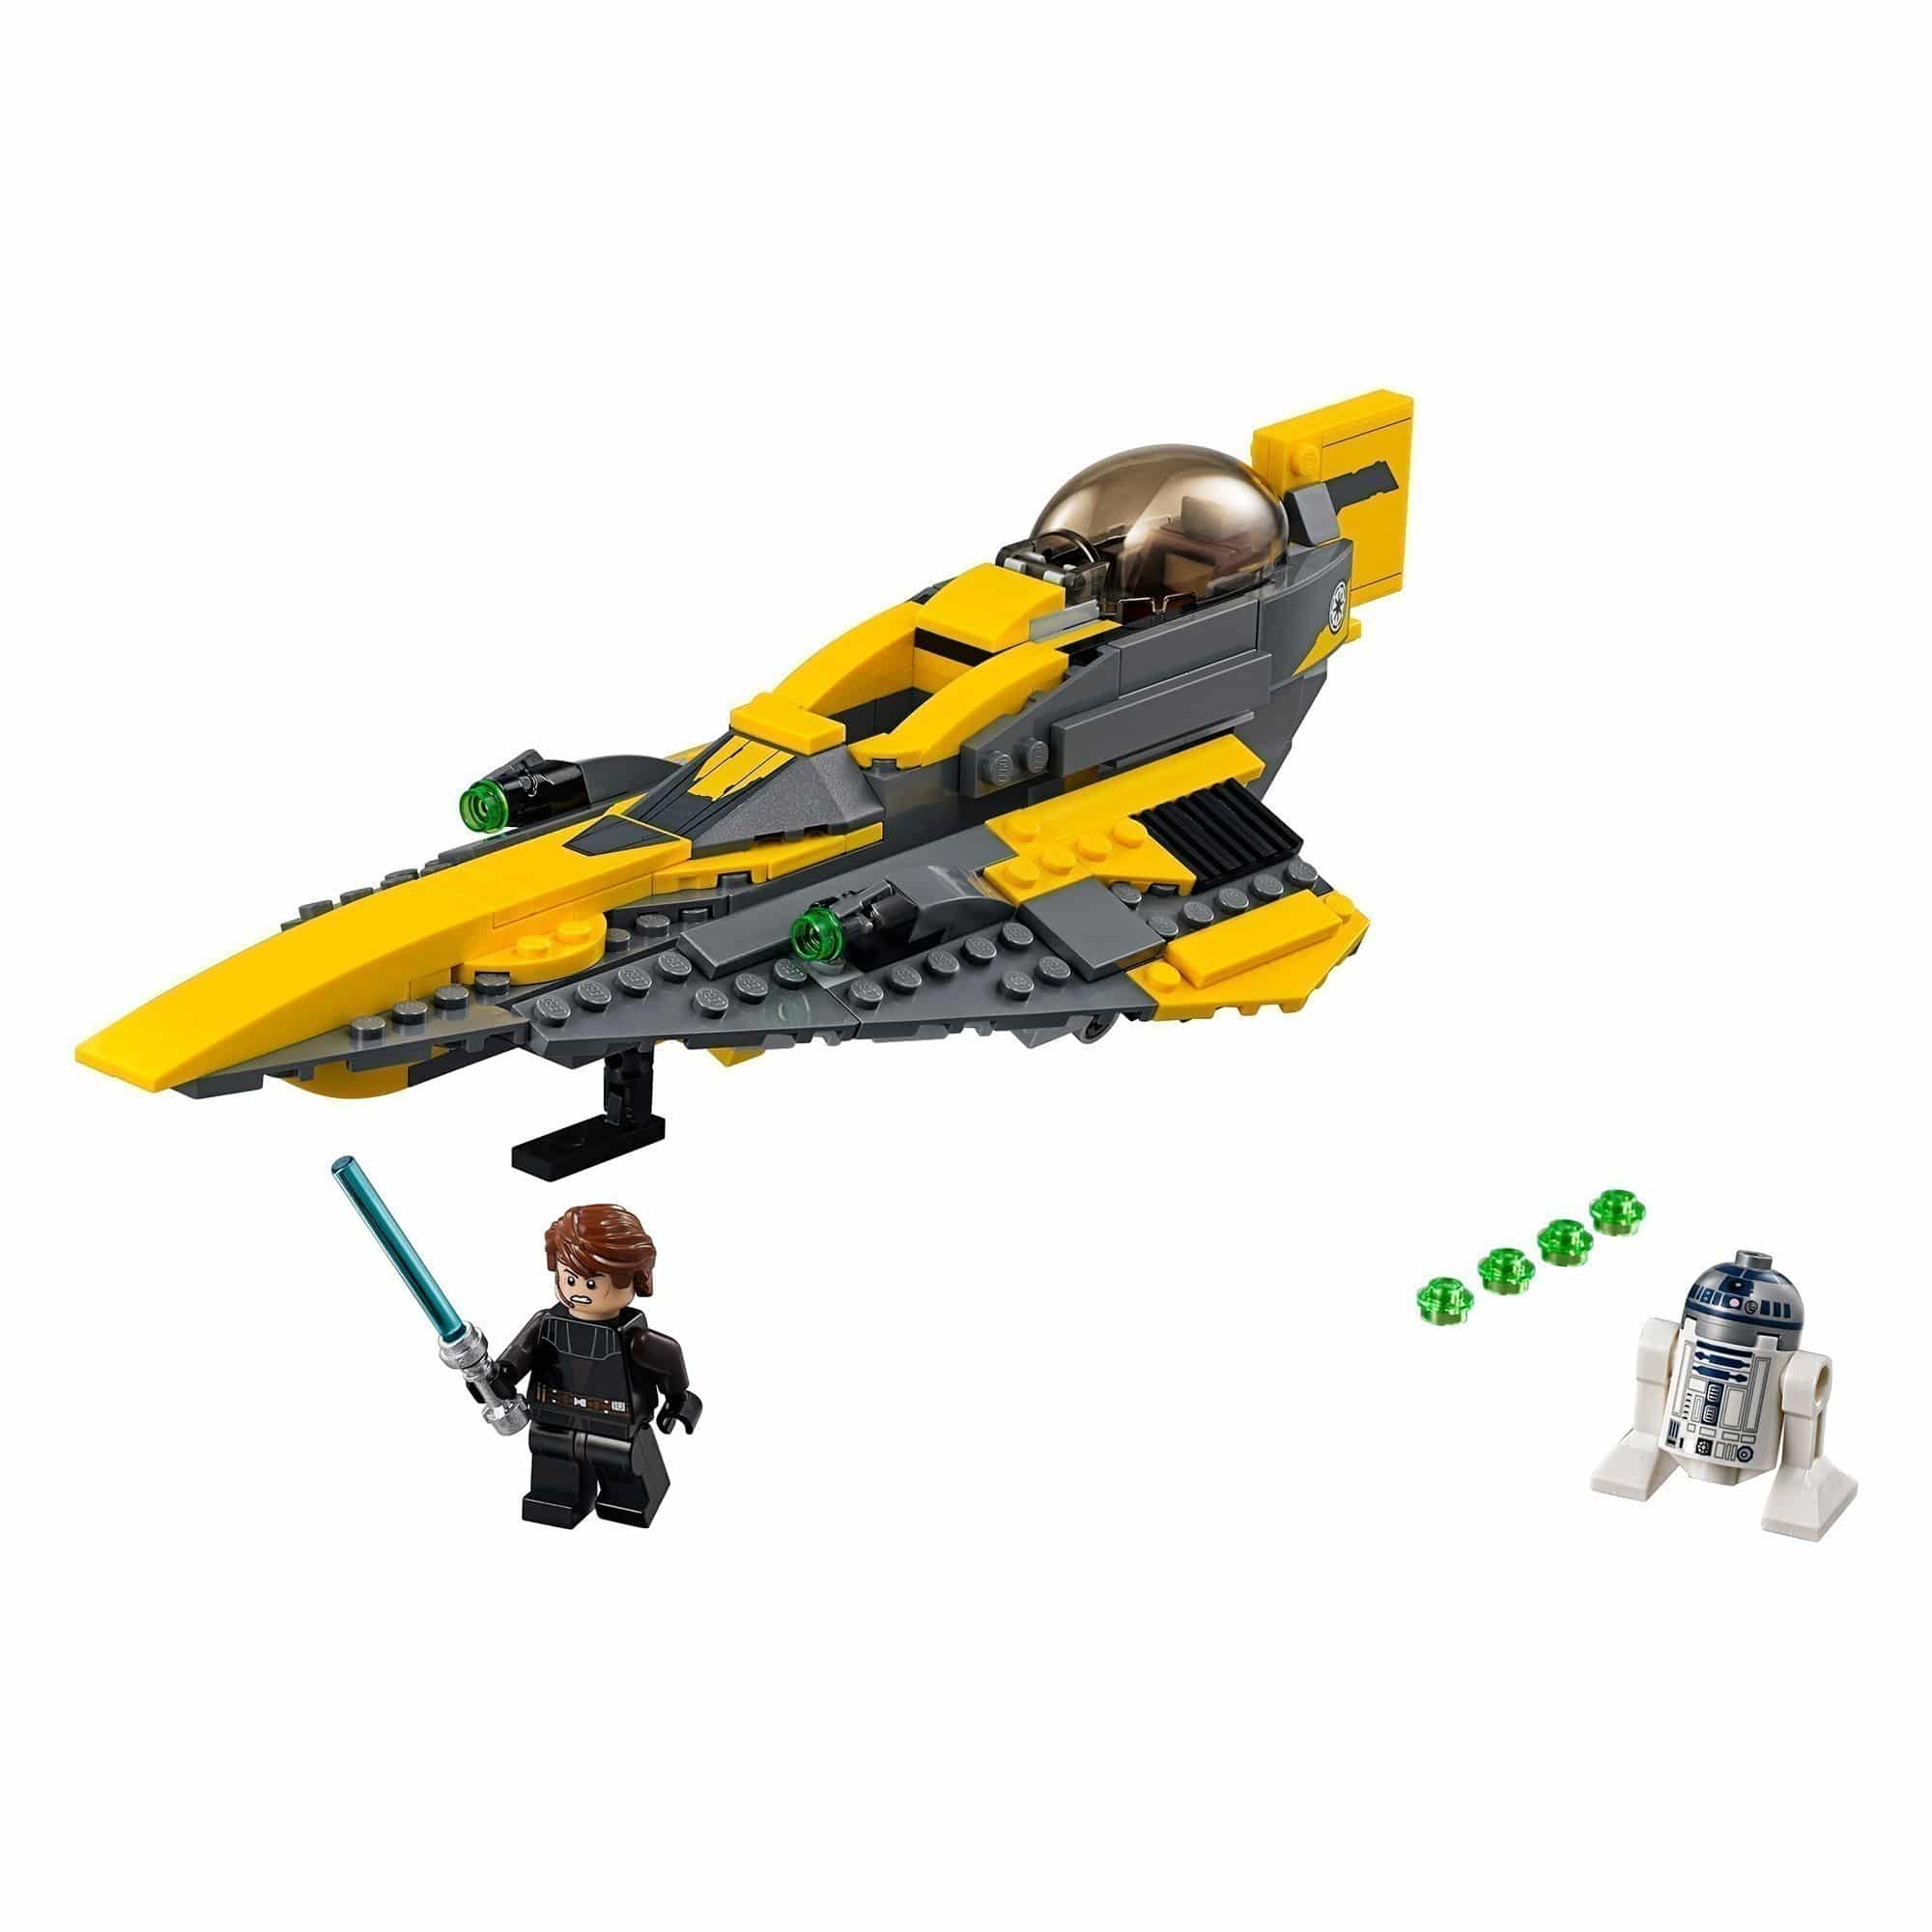 LEGO® - Star Wars™ - 75214 Anakin's Jedi Fighter